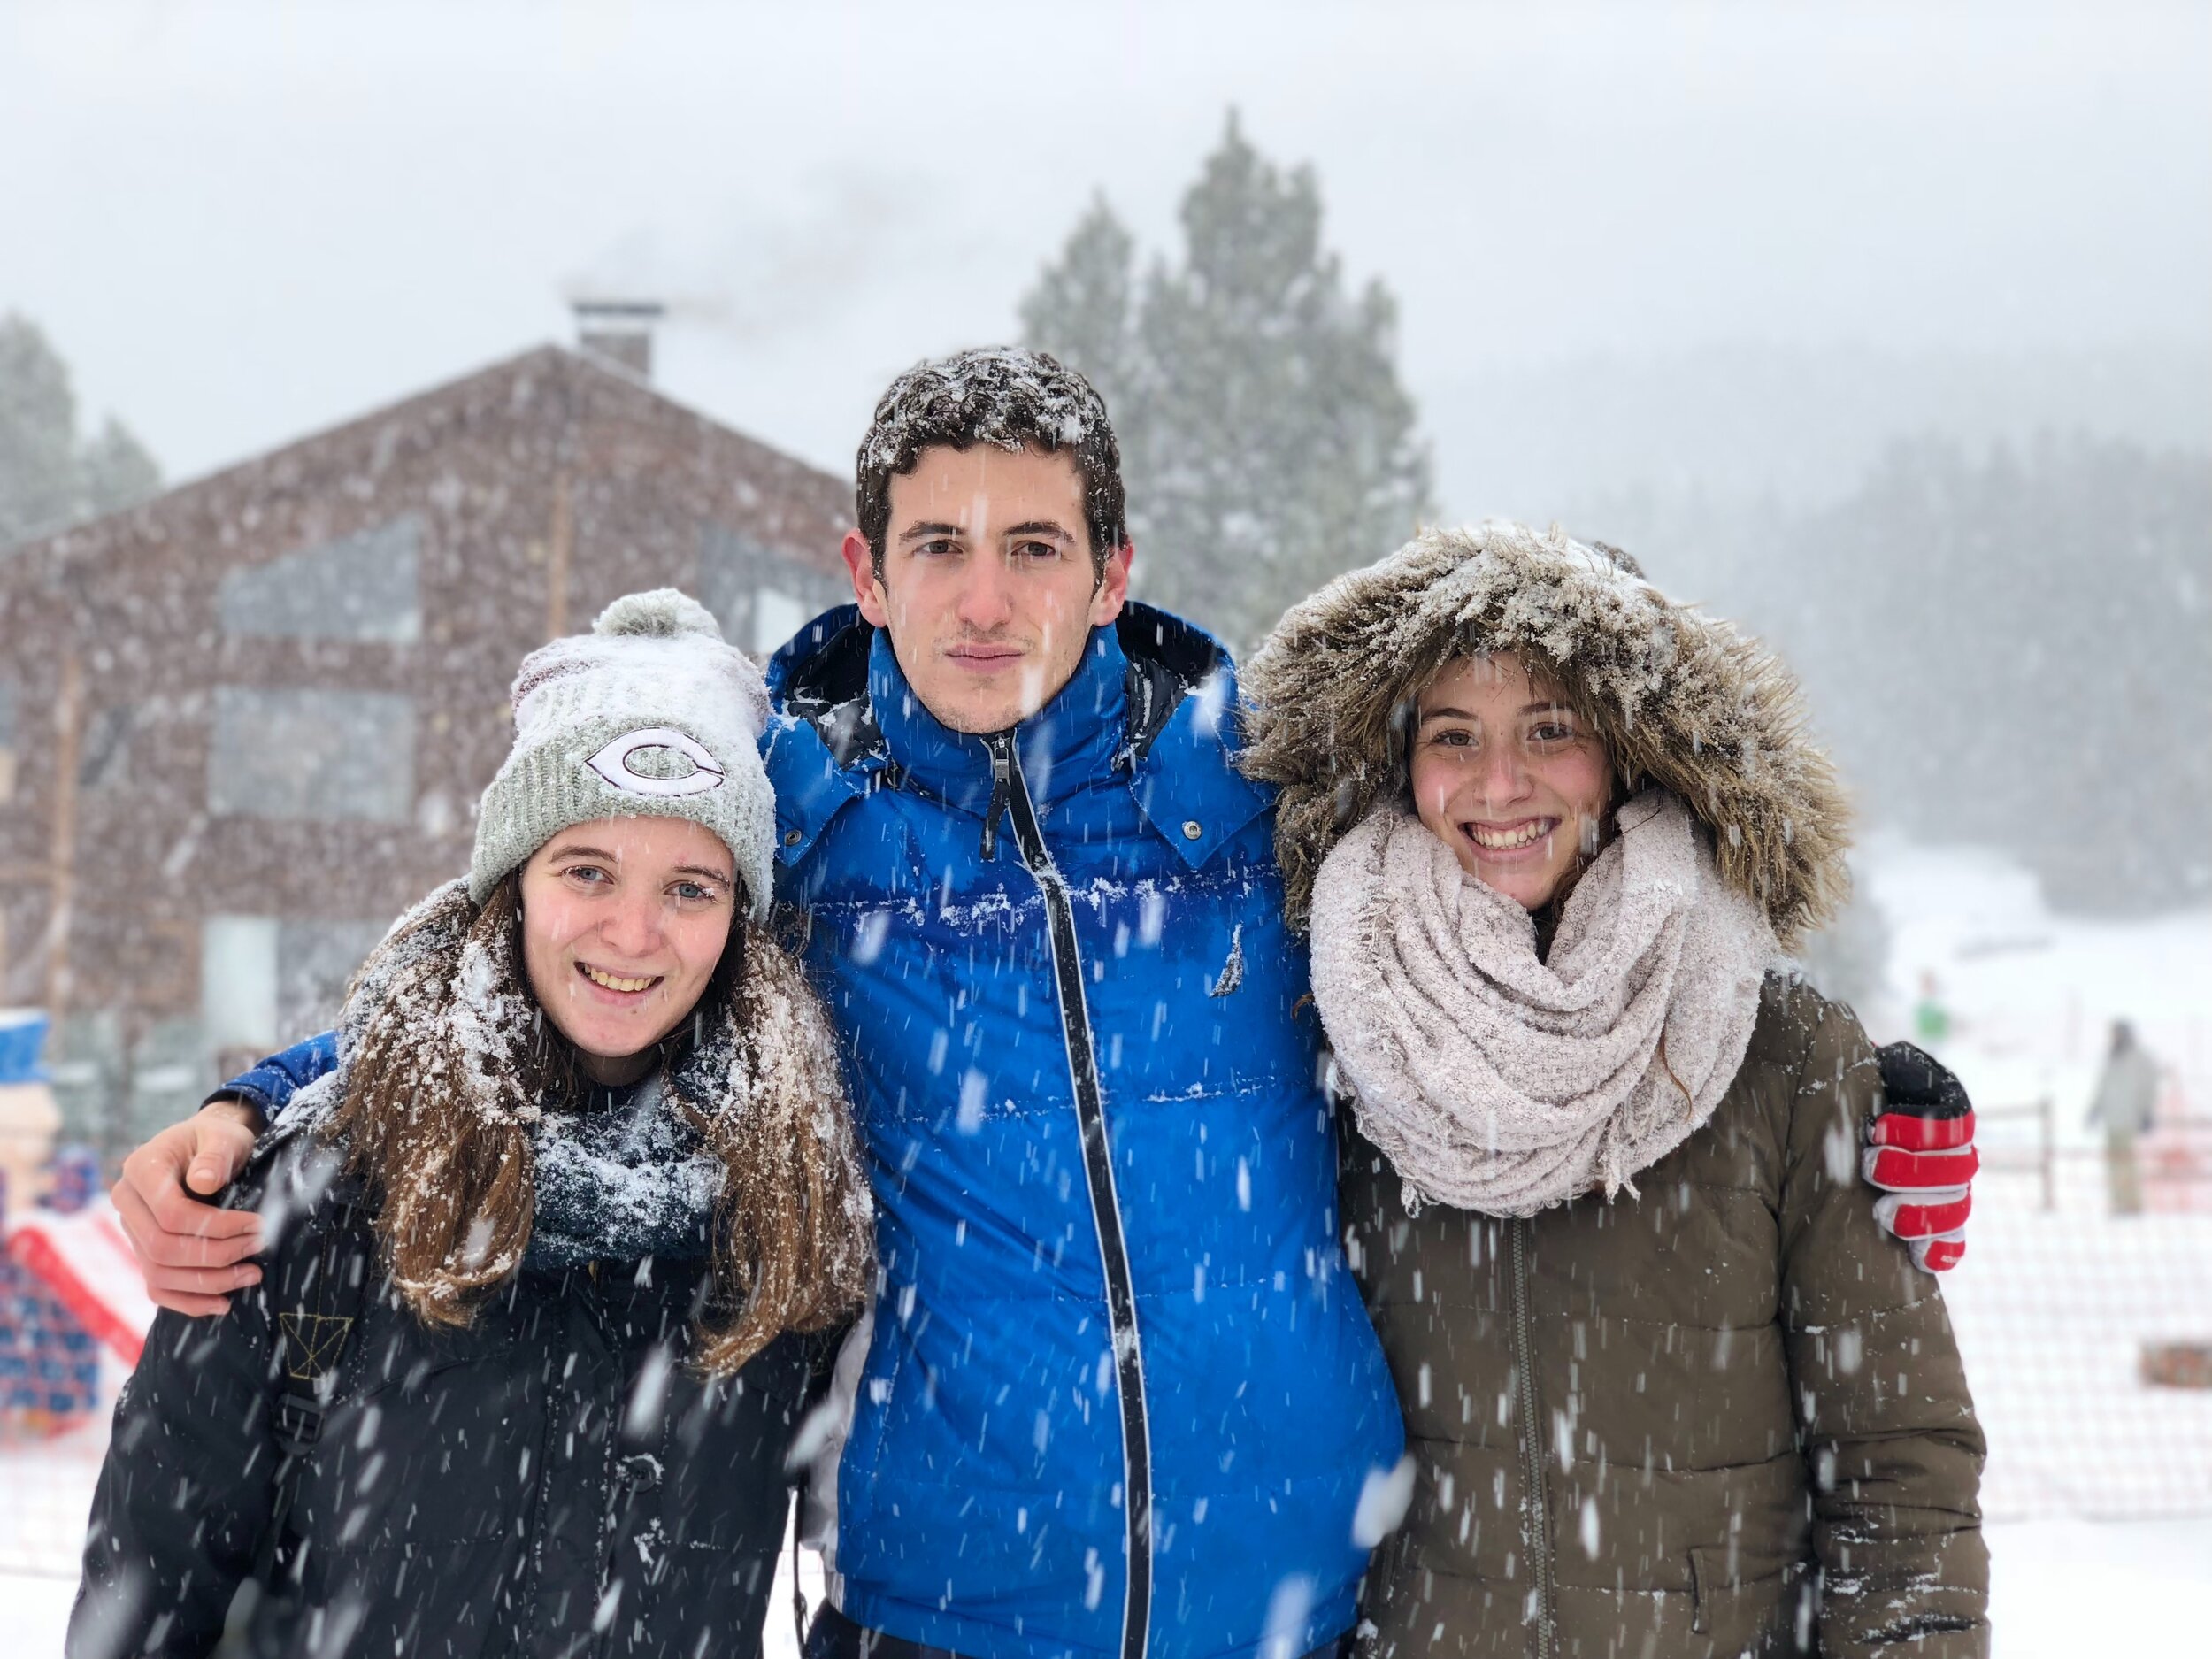 3 siblings in the snow